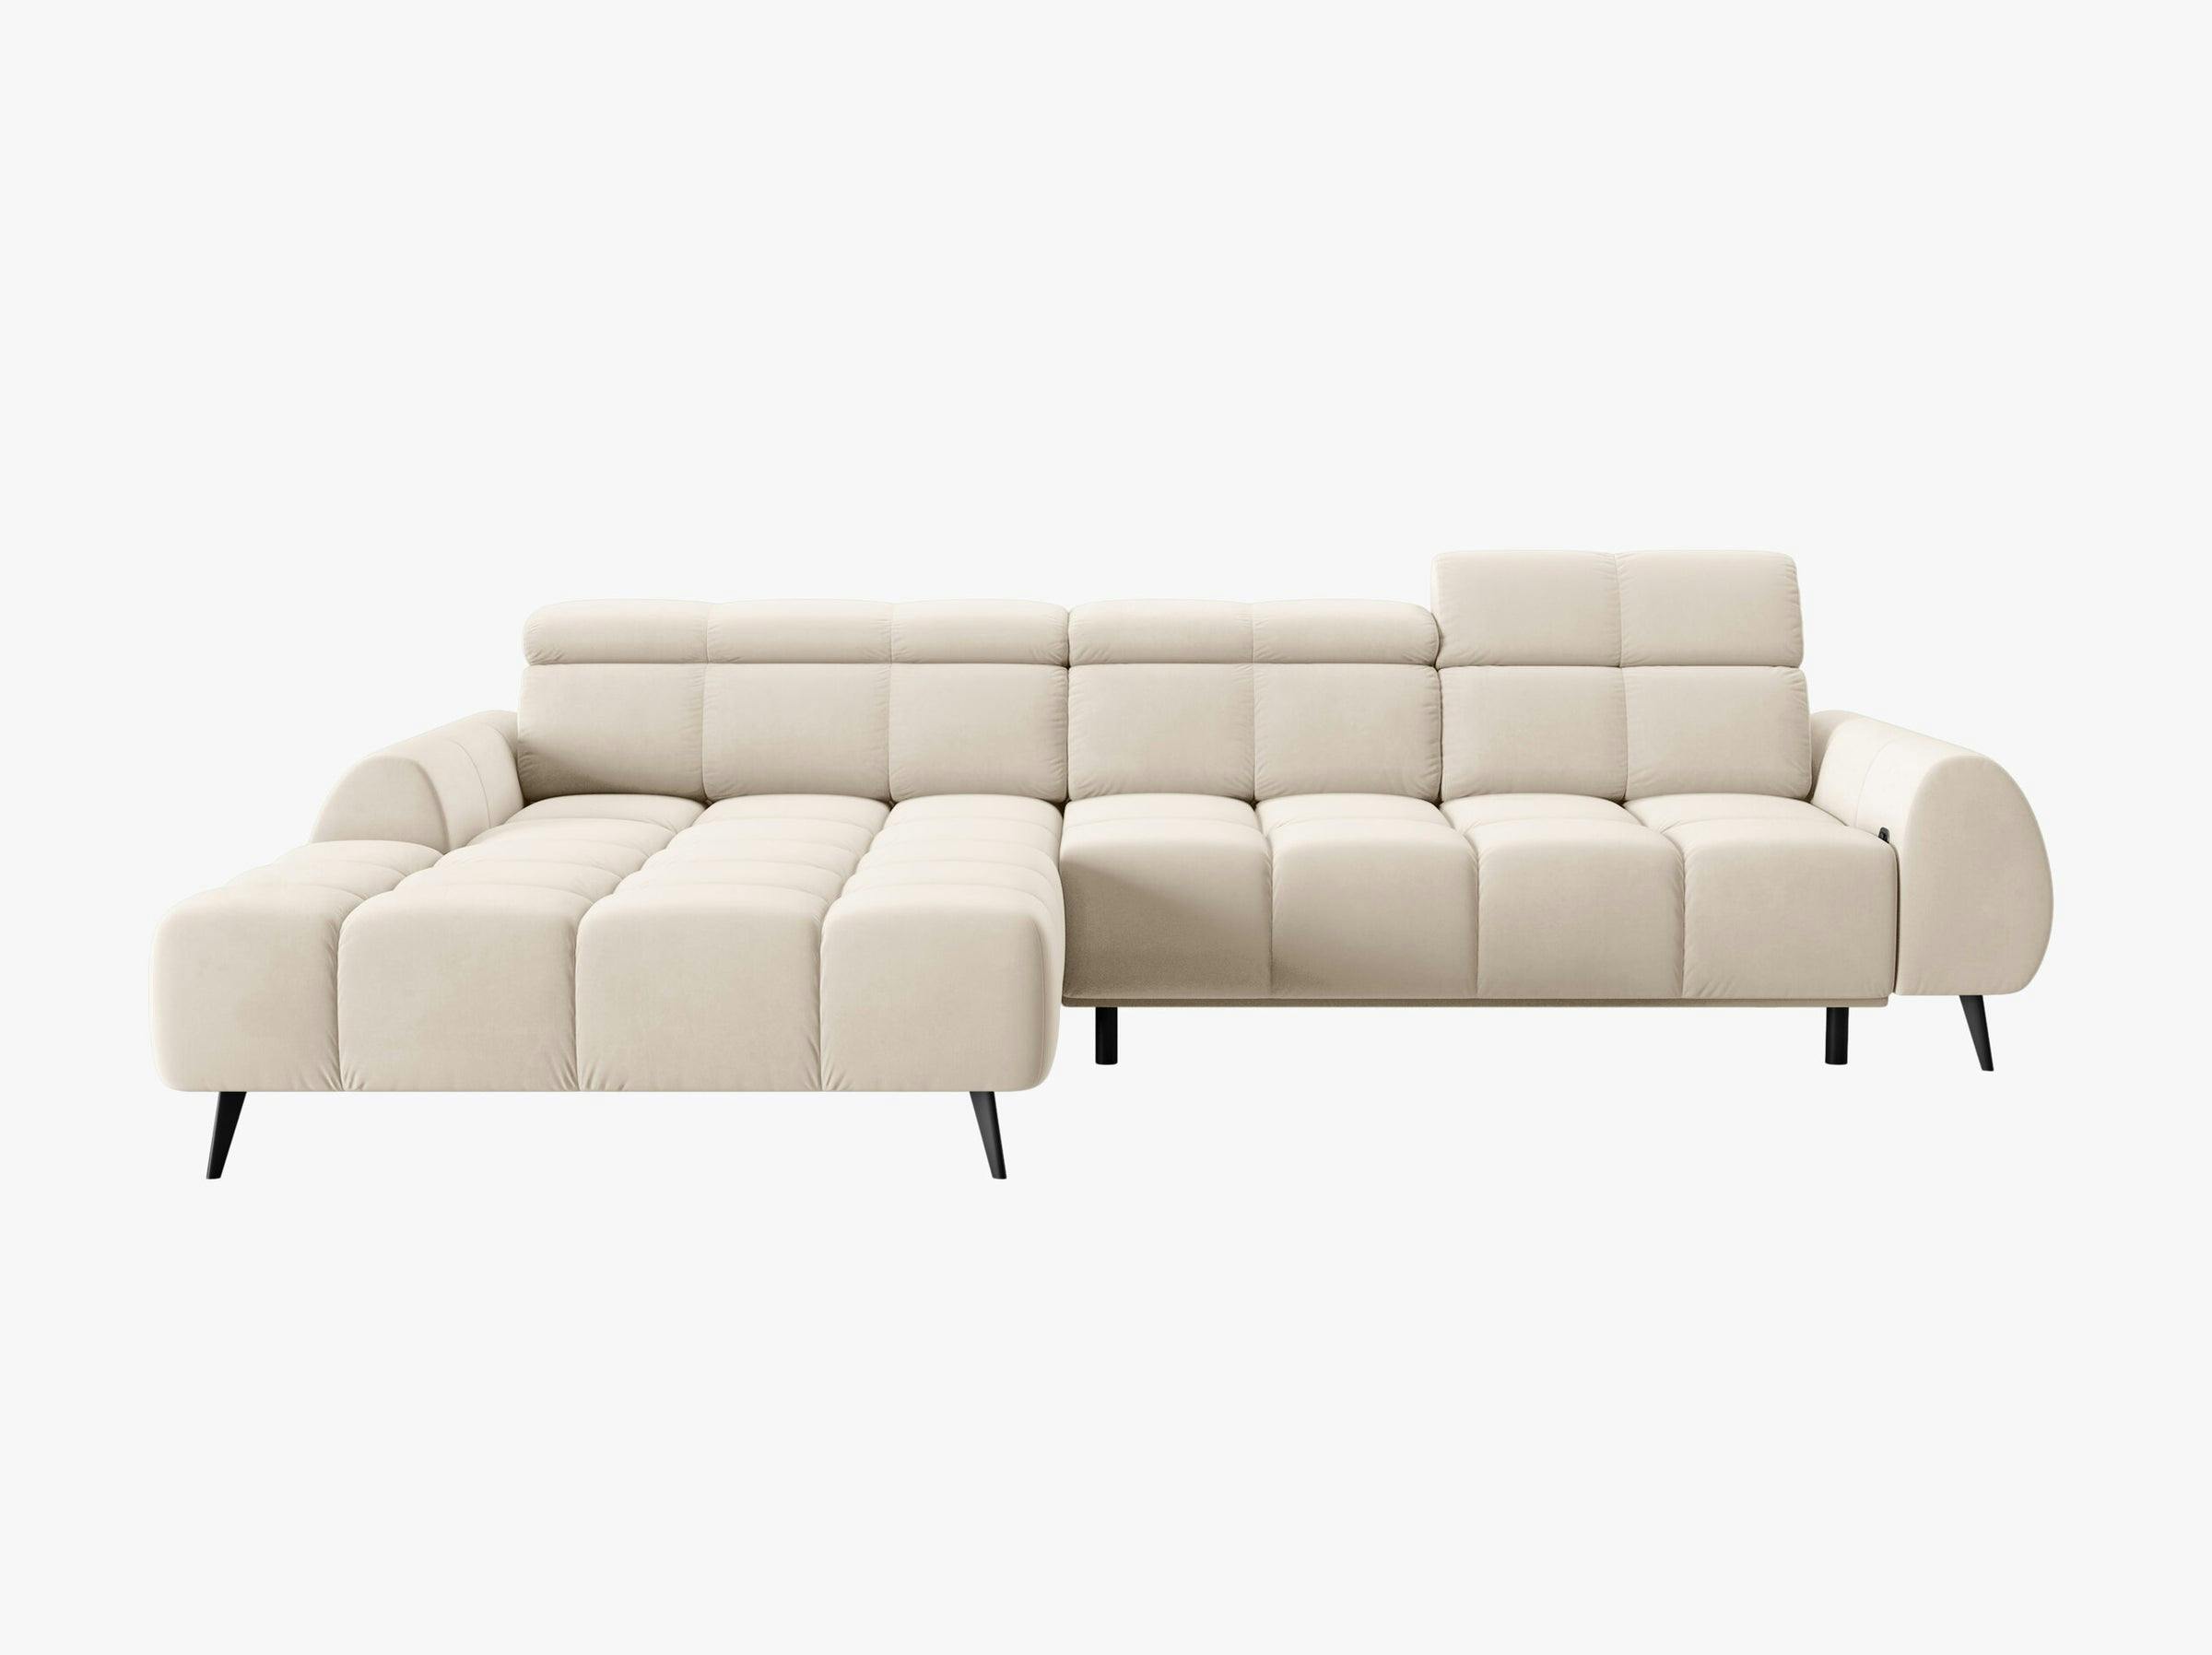 Alyse sofas velvet light beige